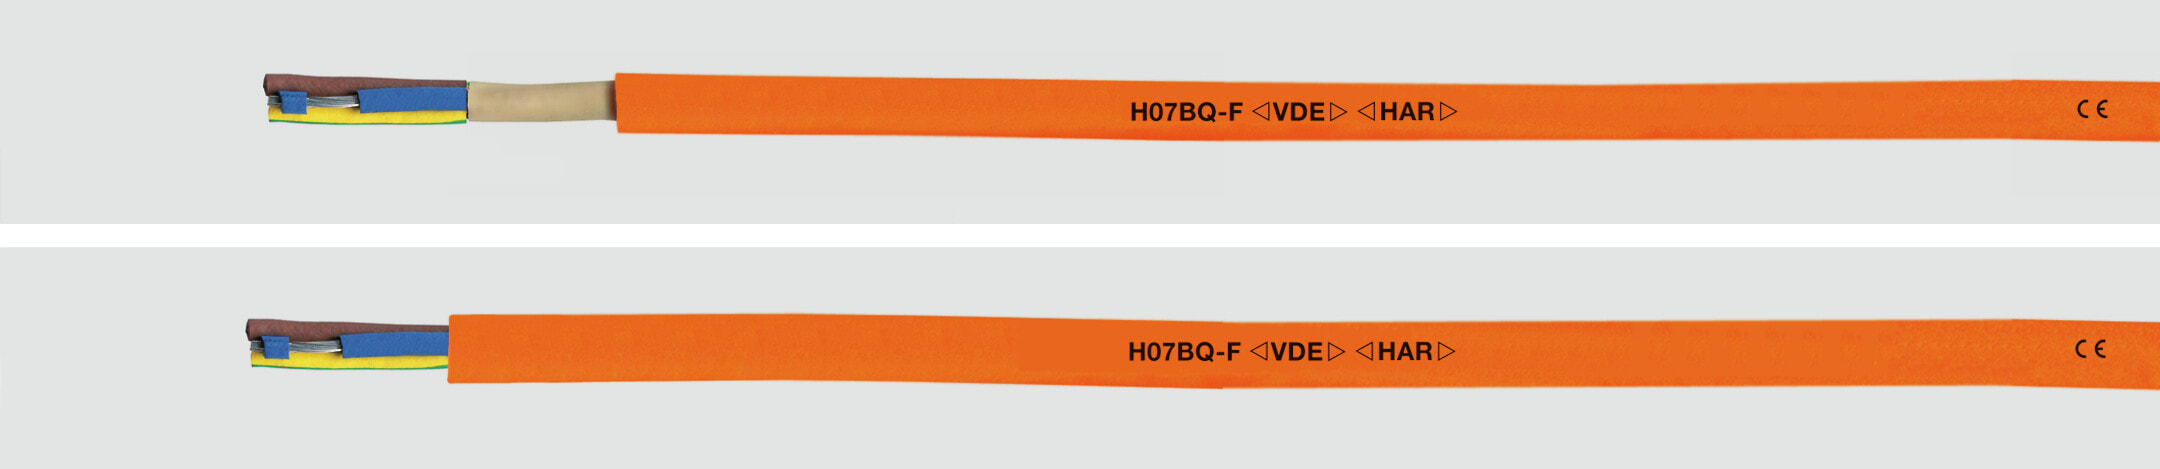 Helukabel 22052 - Low voltage cable - Orange - Cooper - 0.75 mm² - 29 kg/km - -40 - 80 °C